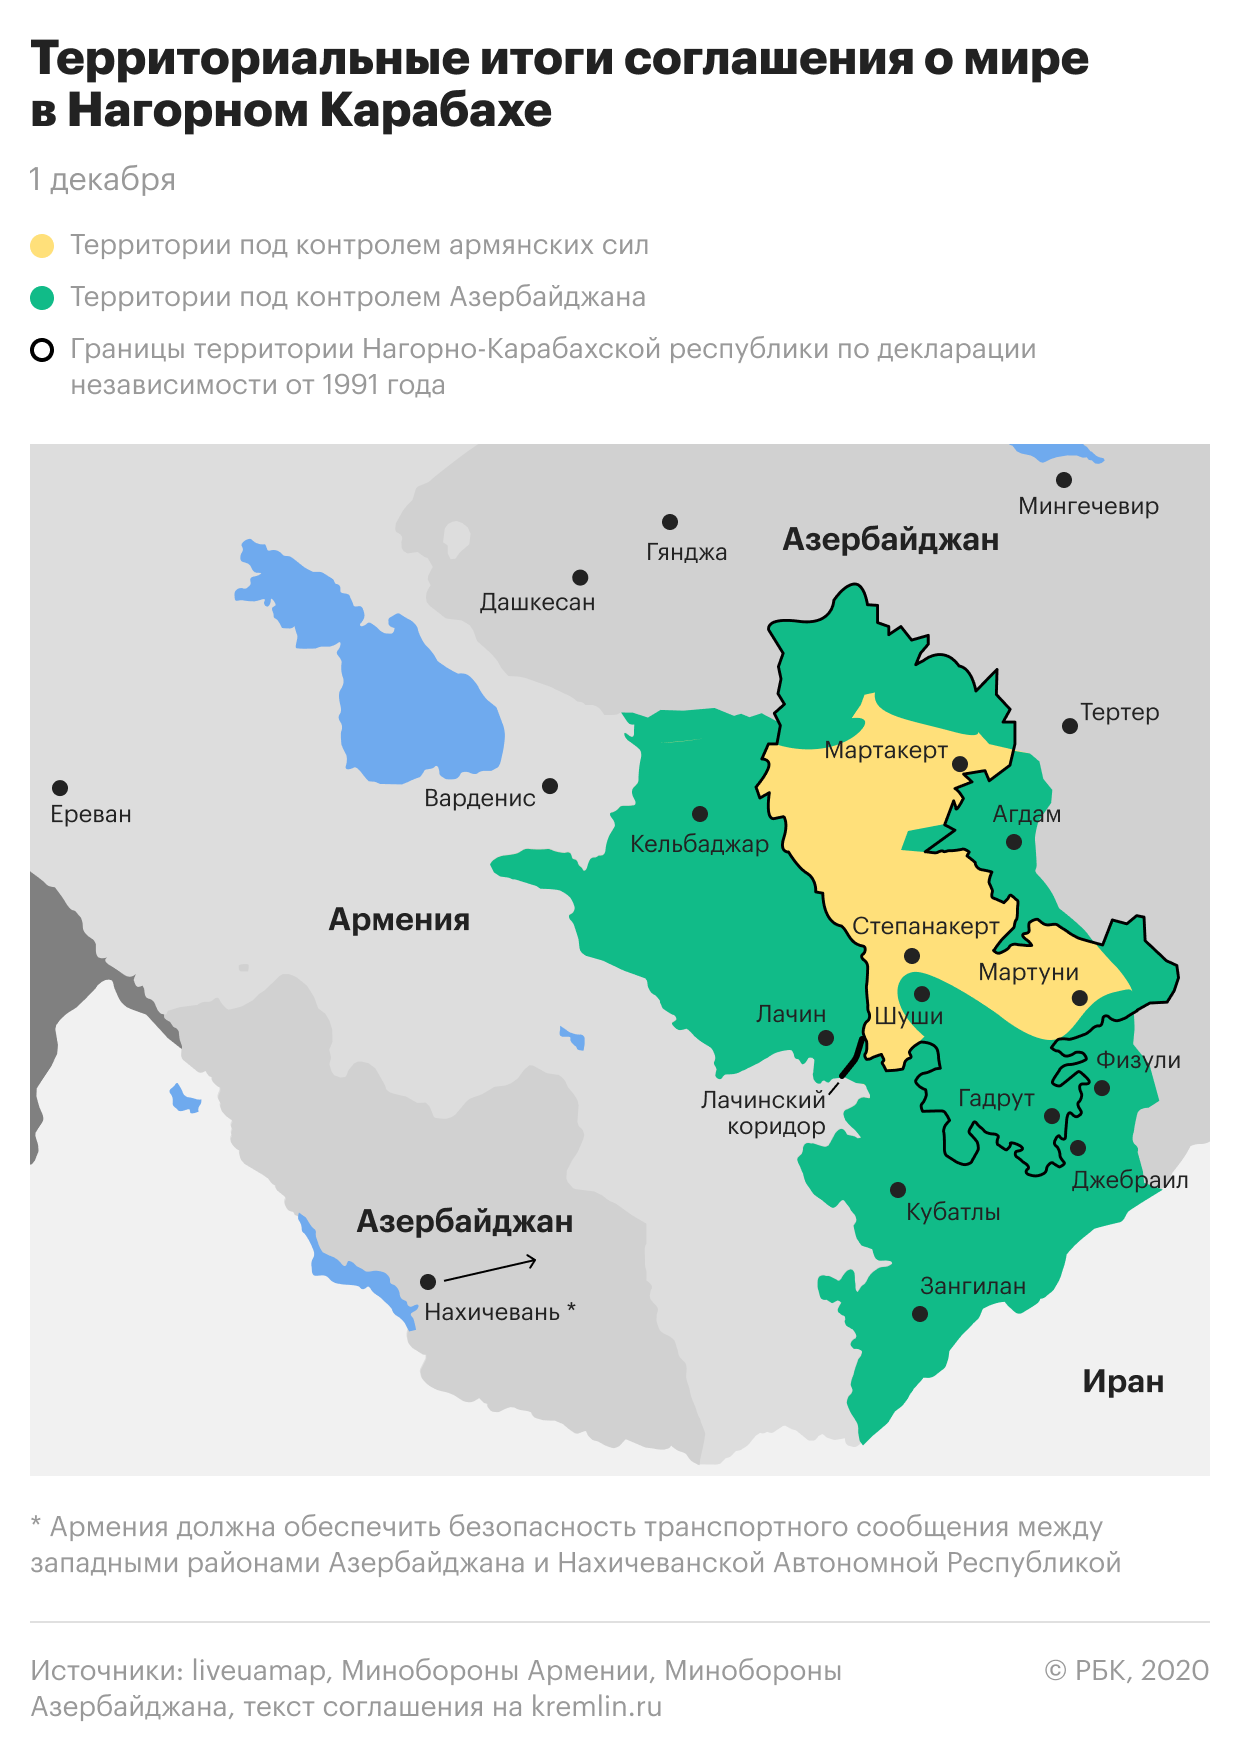 Территориальные итоги соглашения о мире в Нагорном Карабахе. Карта — РБК